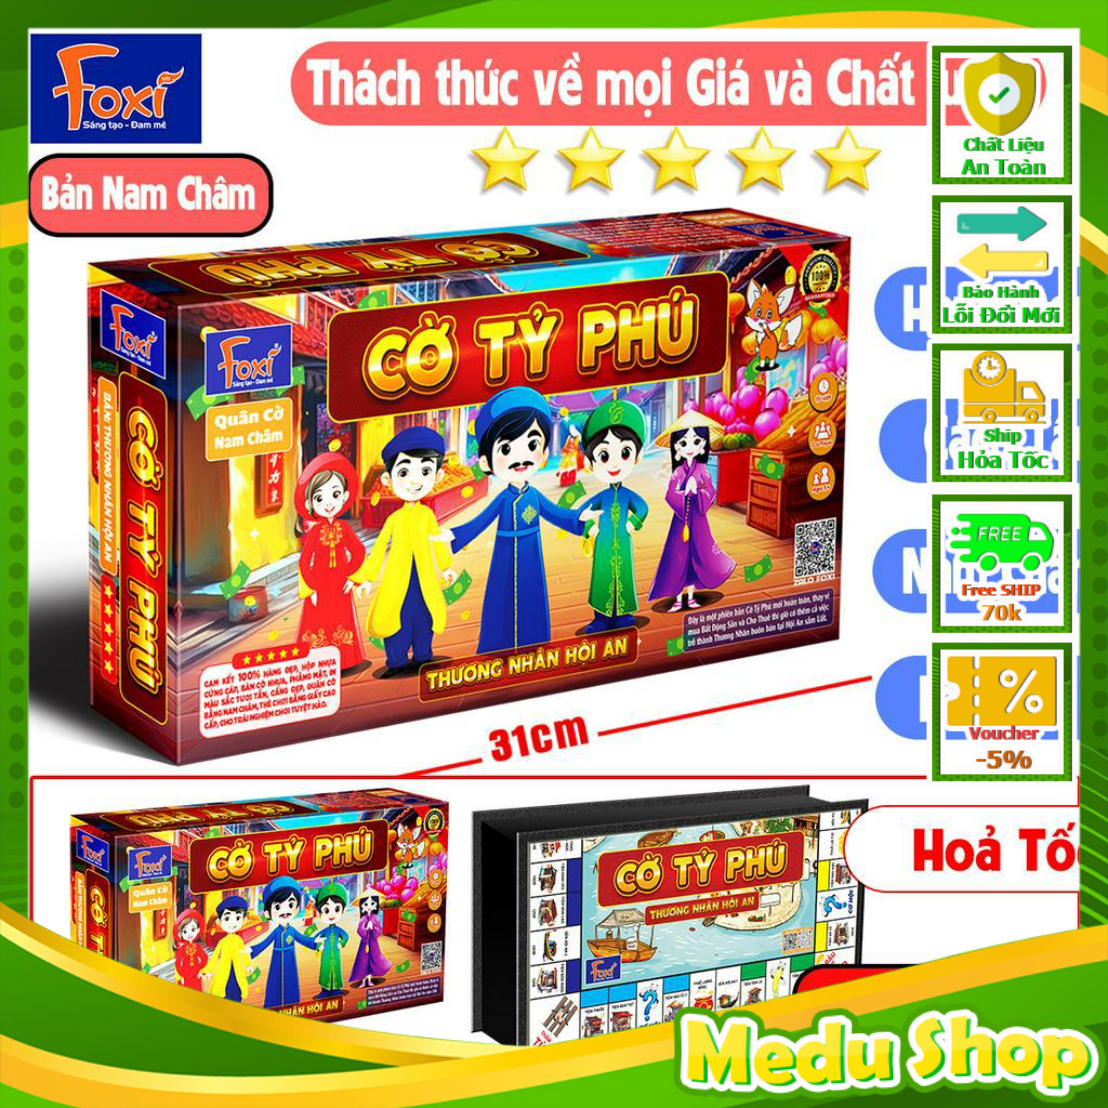 Bộ Cờ Tỷ Phú-Tỉ Phú Nam Châm Foxi-Thương nhân Hội An-monopoly-SIZE TO 31cm